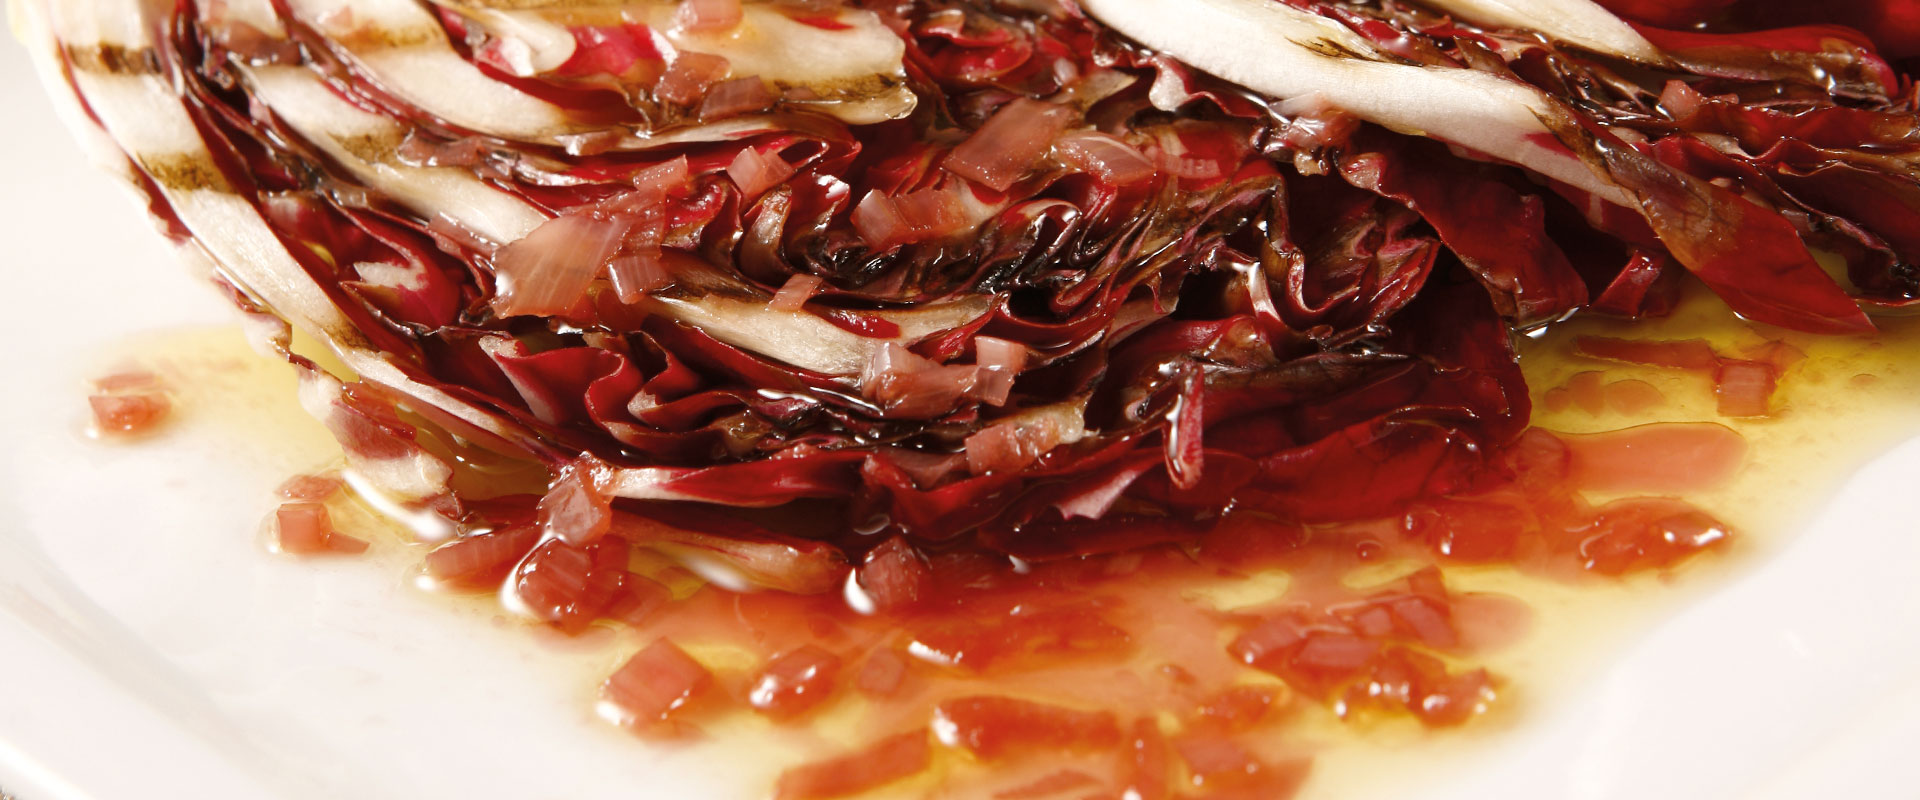 Chicorée rouge en sauce réduite de vinaigre : la recette - Magazine